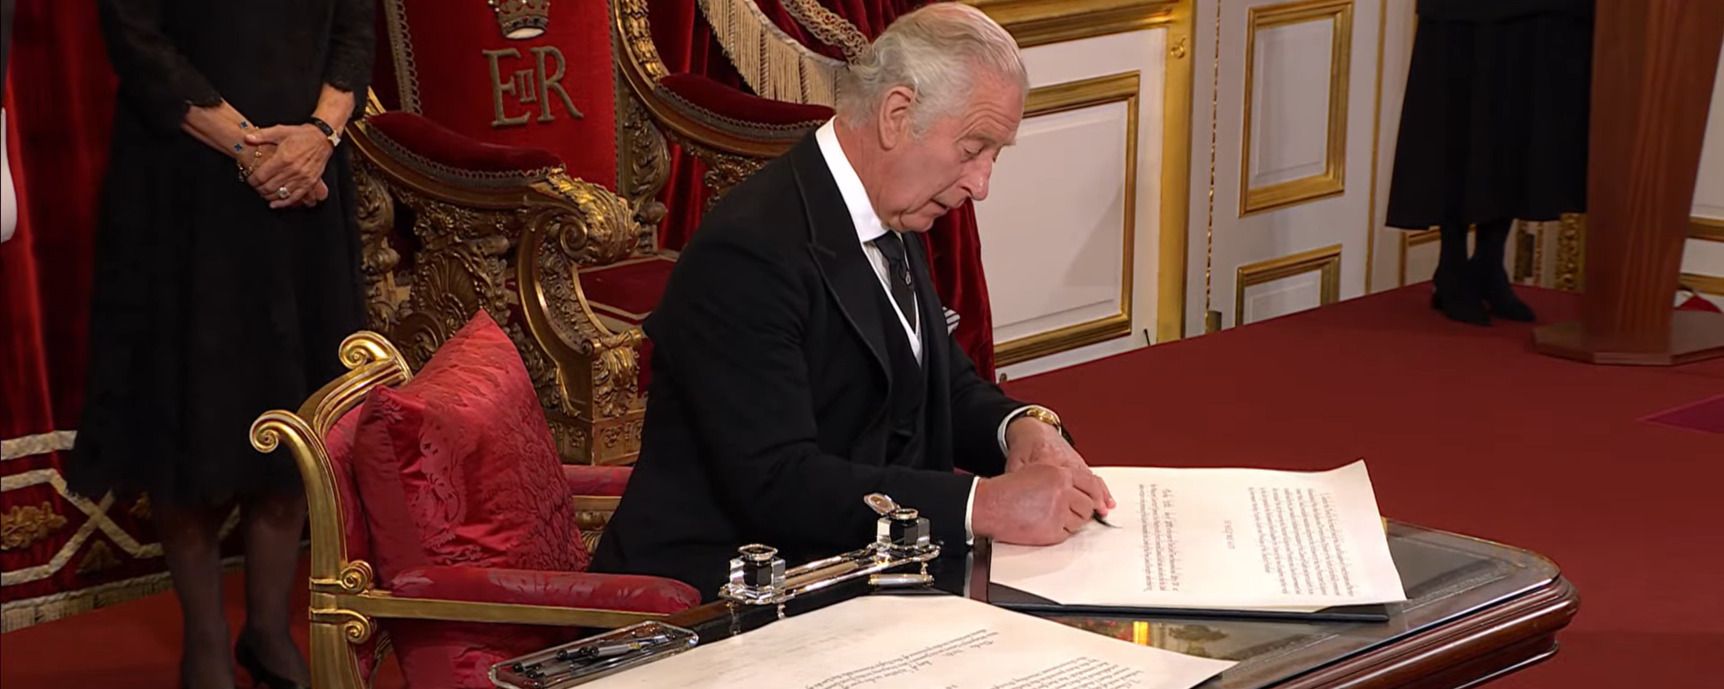 Новый король Чарльз III – интересная деталь с церемонии объявления - Showbiz